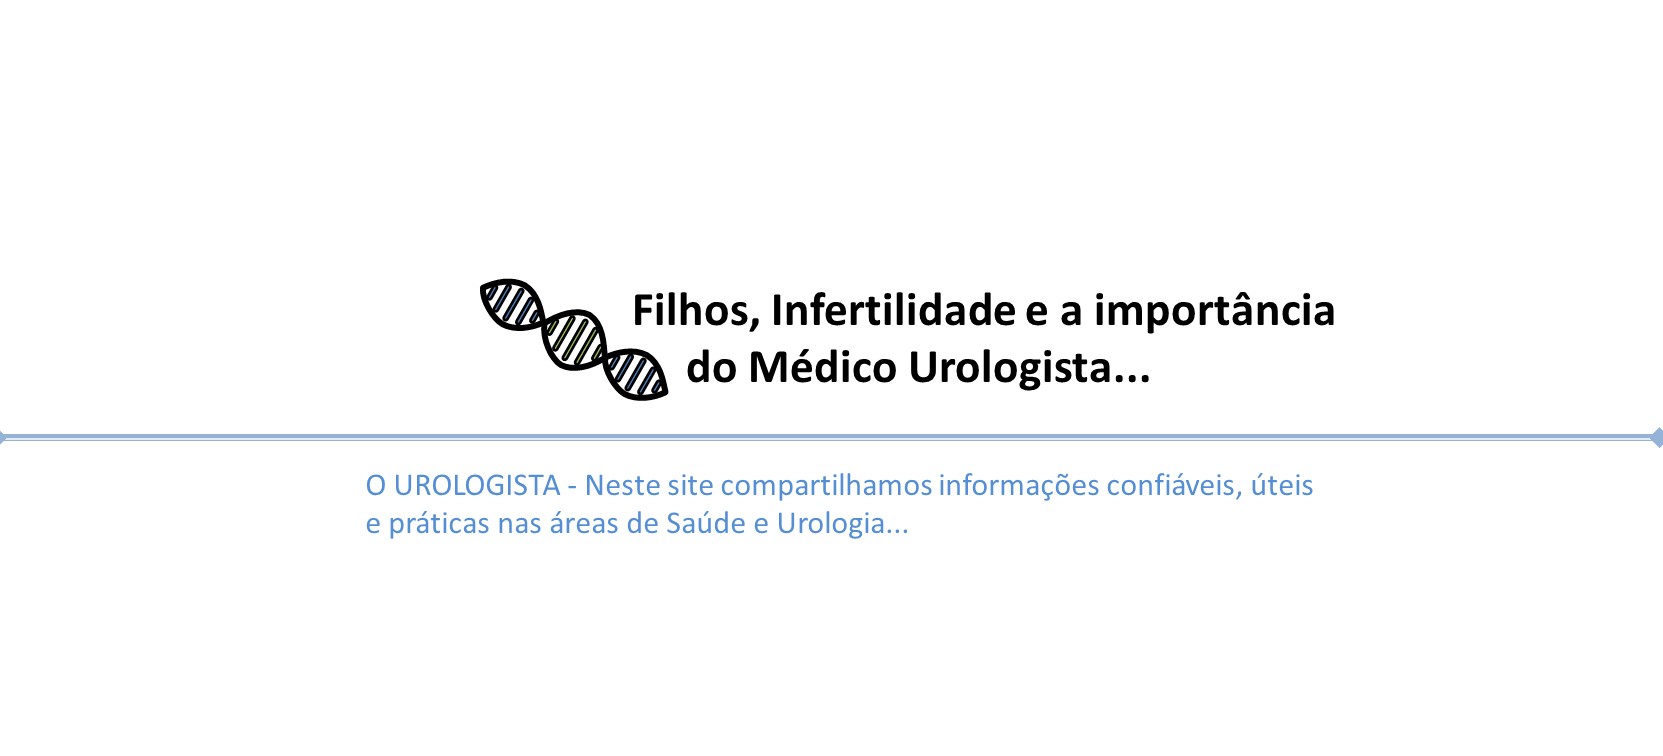 Filhos, infertilidade e a importância do médico urologista.